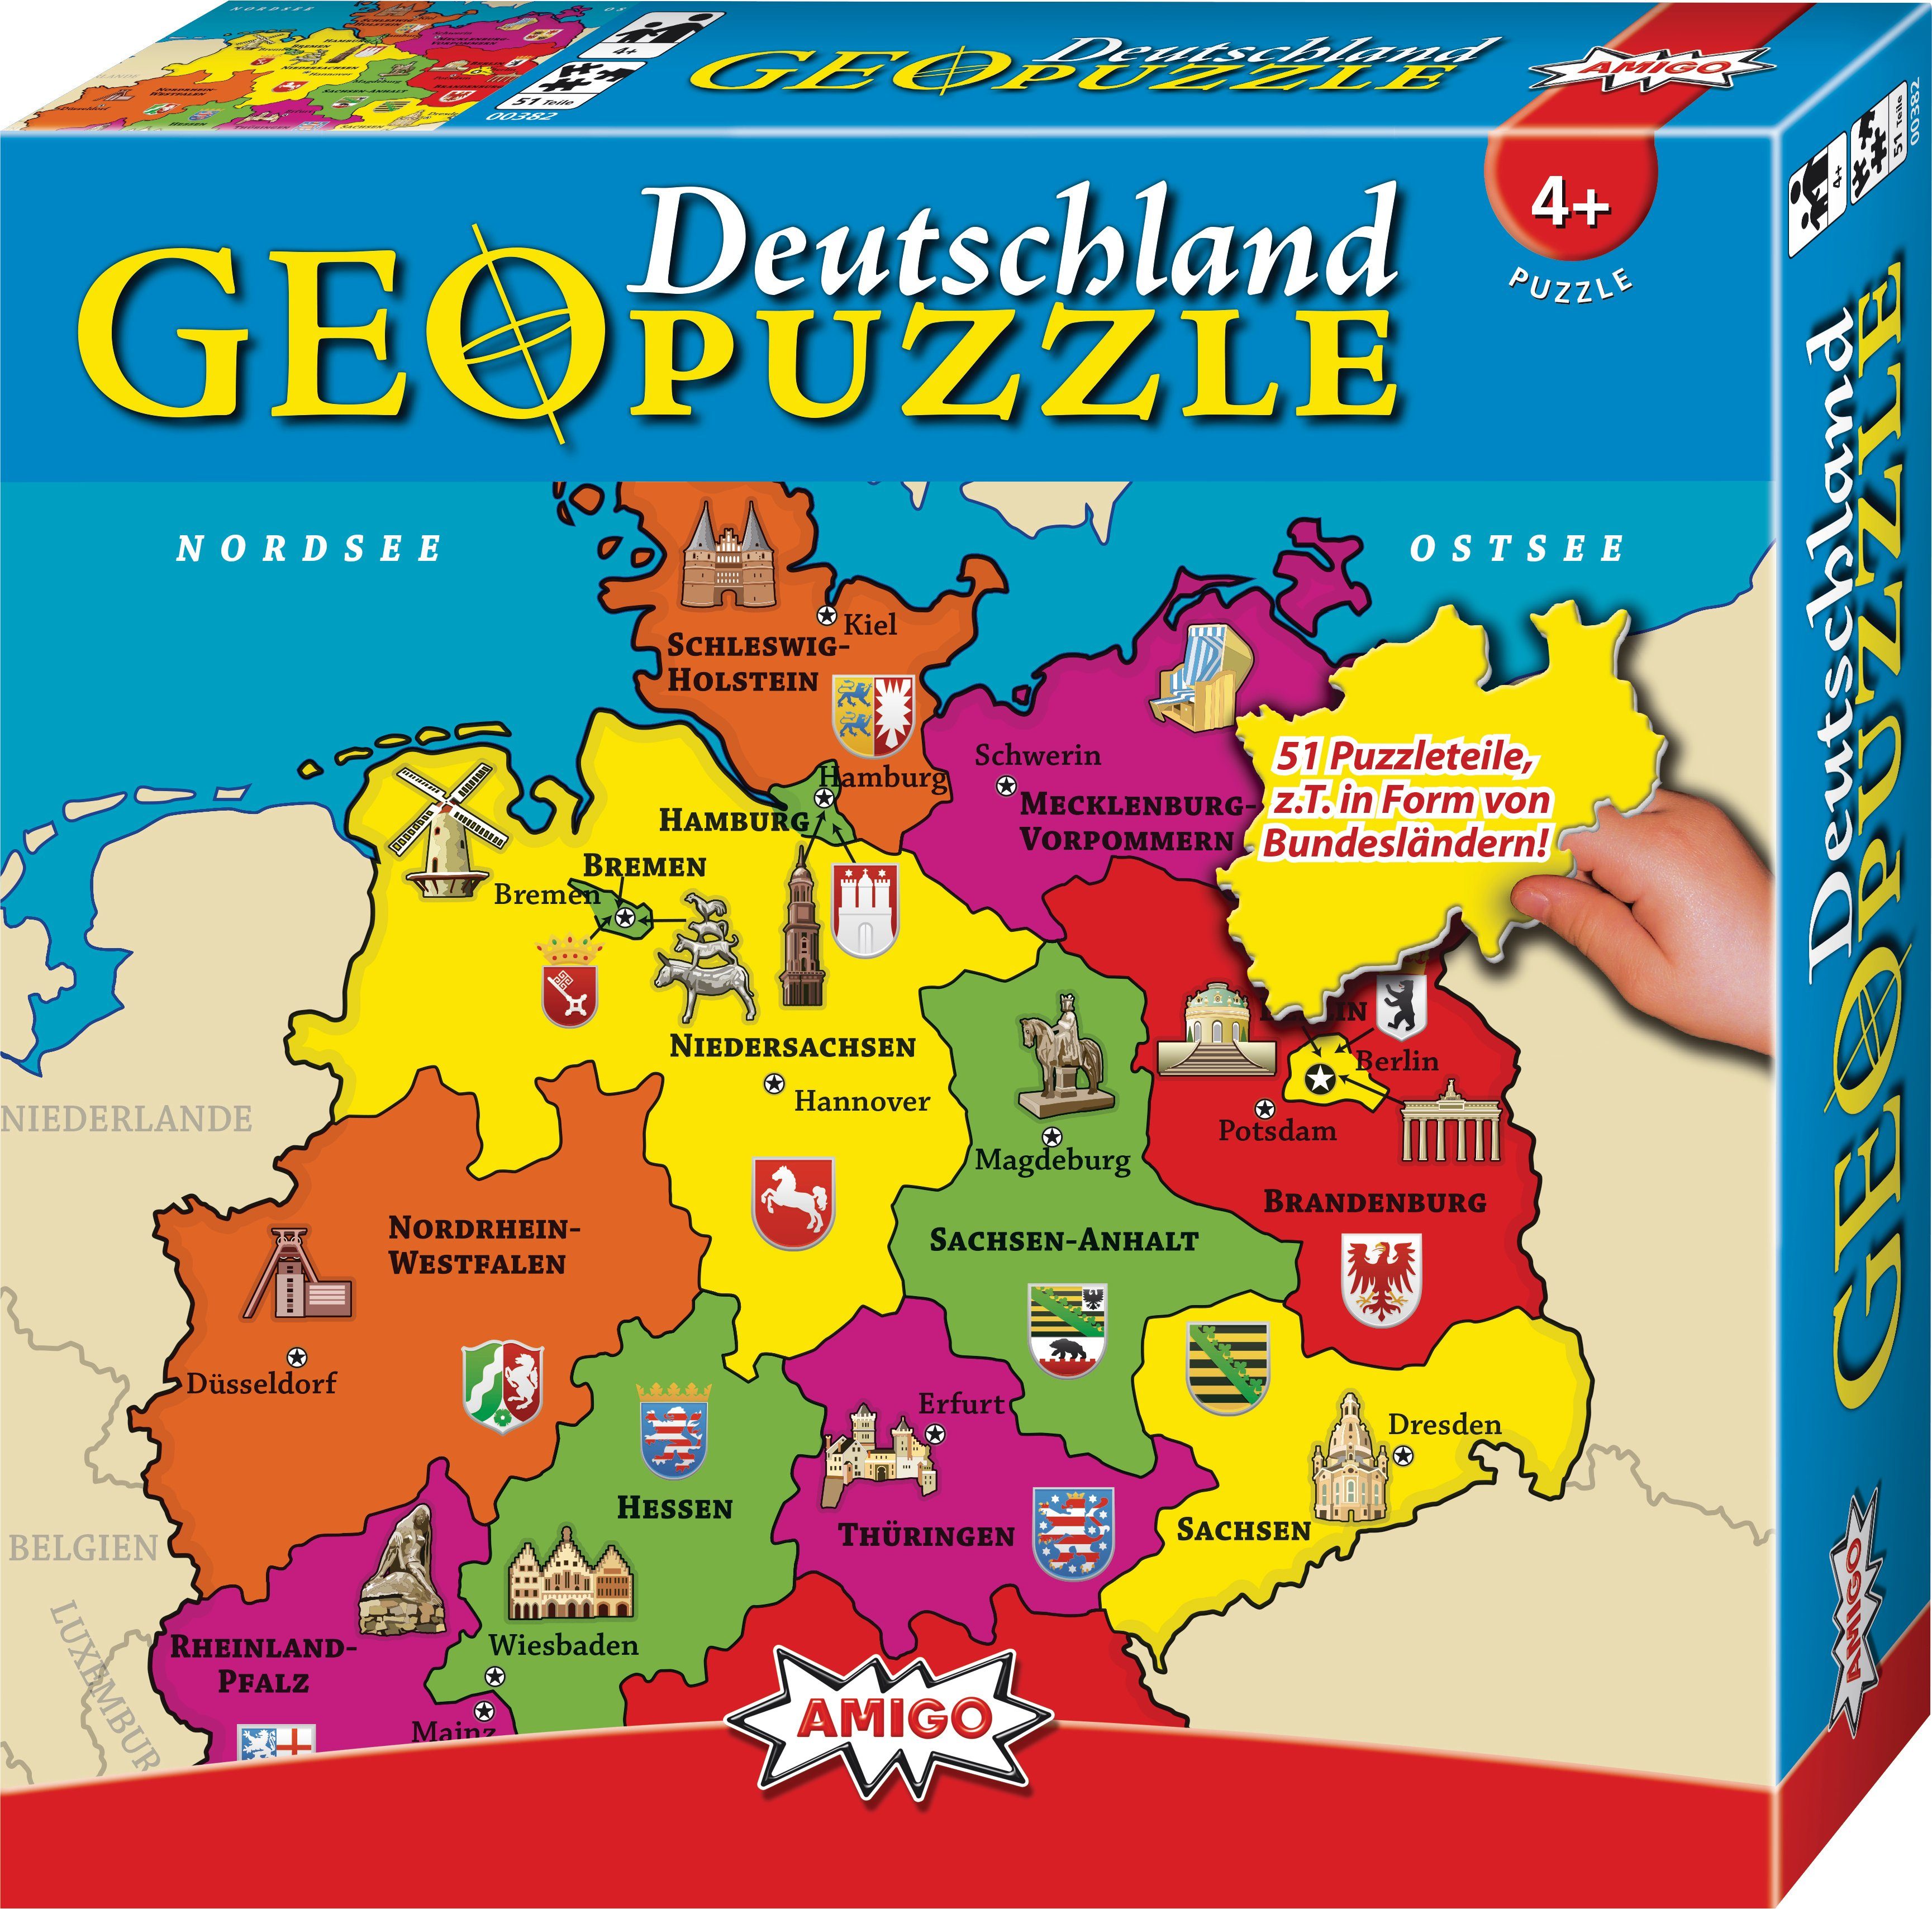 Es fühlt sich luxuriös an! AMIGO Puzzle - ab Teile GeoPuzzle Deutschland 4 Puzzleteile 51 Jahren